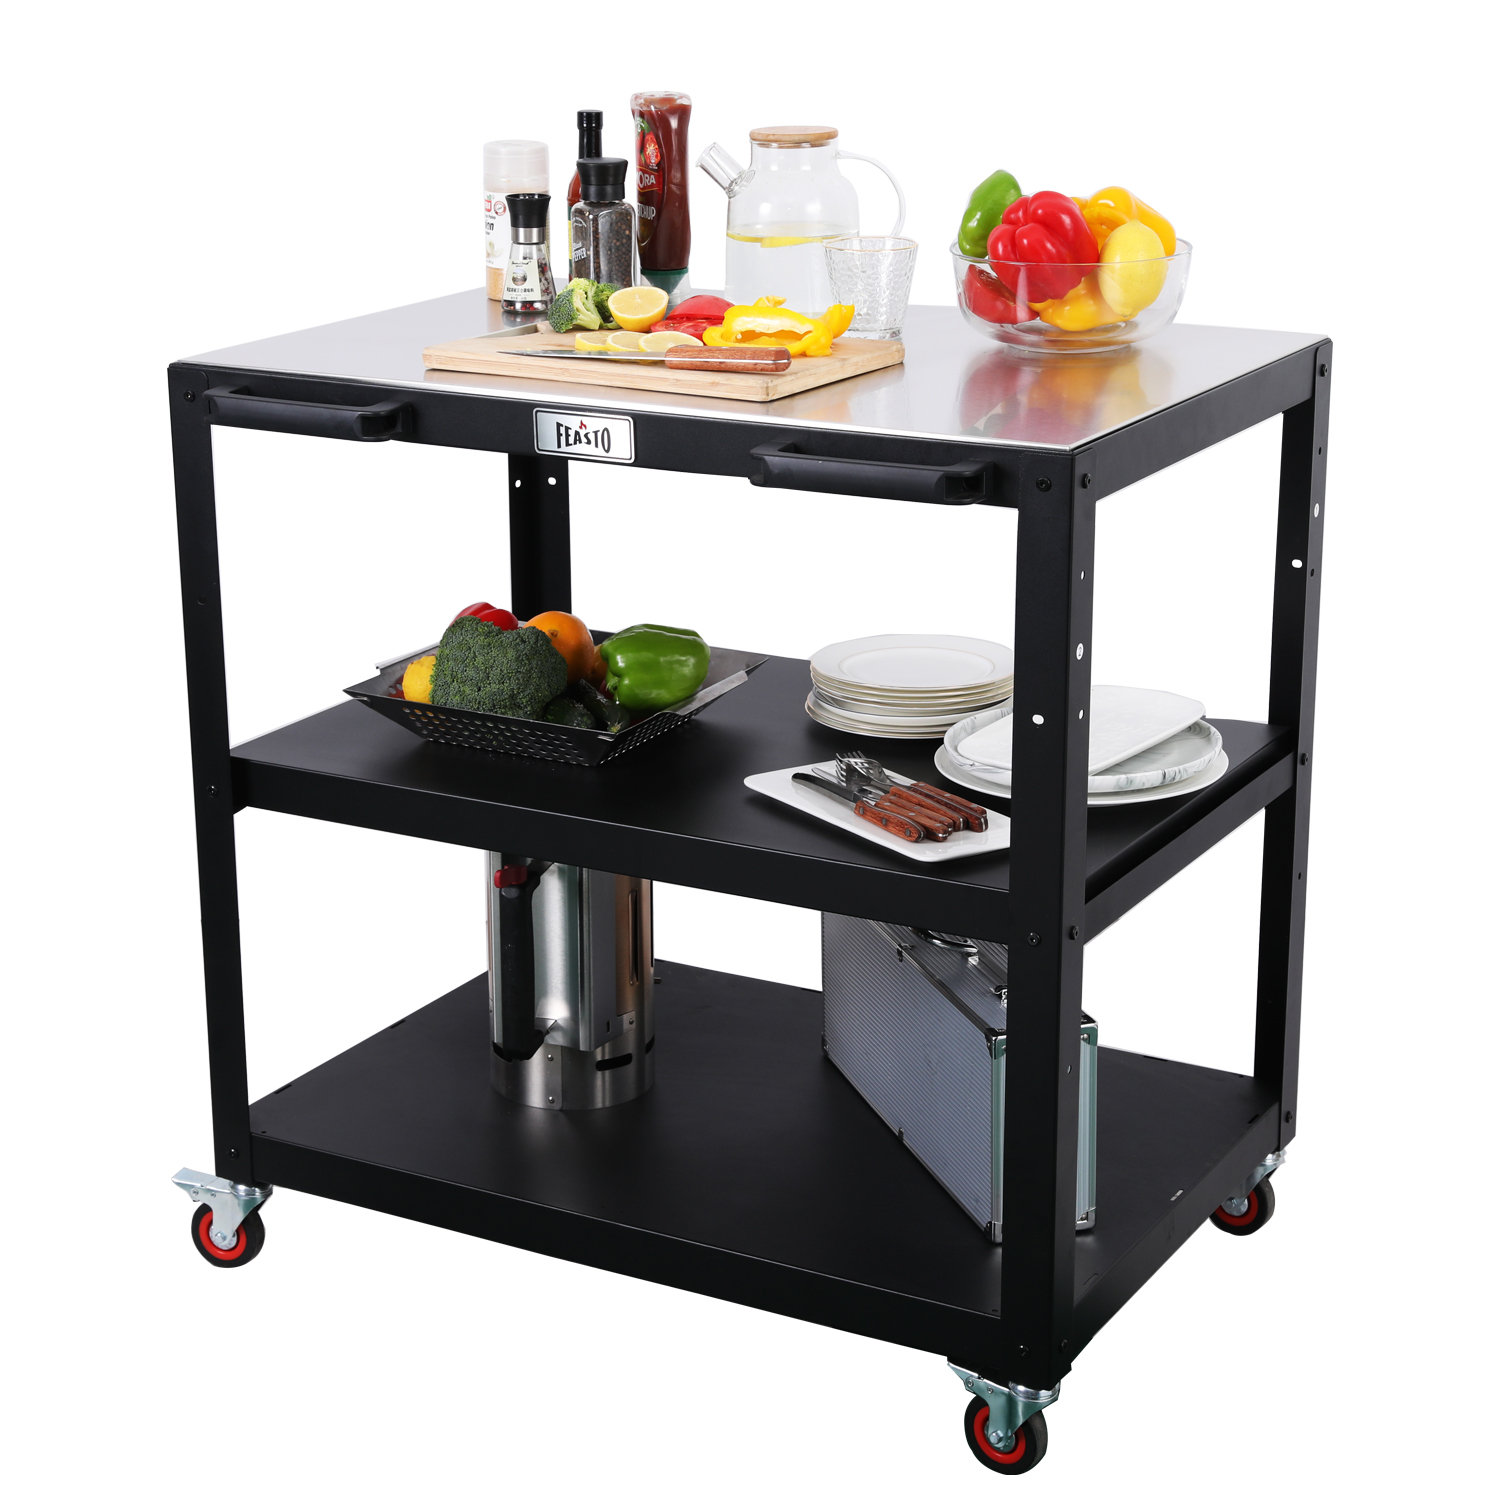 https://assets.wfcdn.com/im/51757162/compr-r85/2531/253197599/35-3-shelf-304-stainless-steel-modular-outdoor-kitchen-bar.jpg